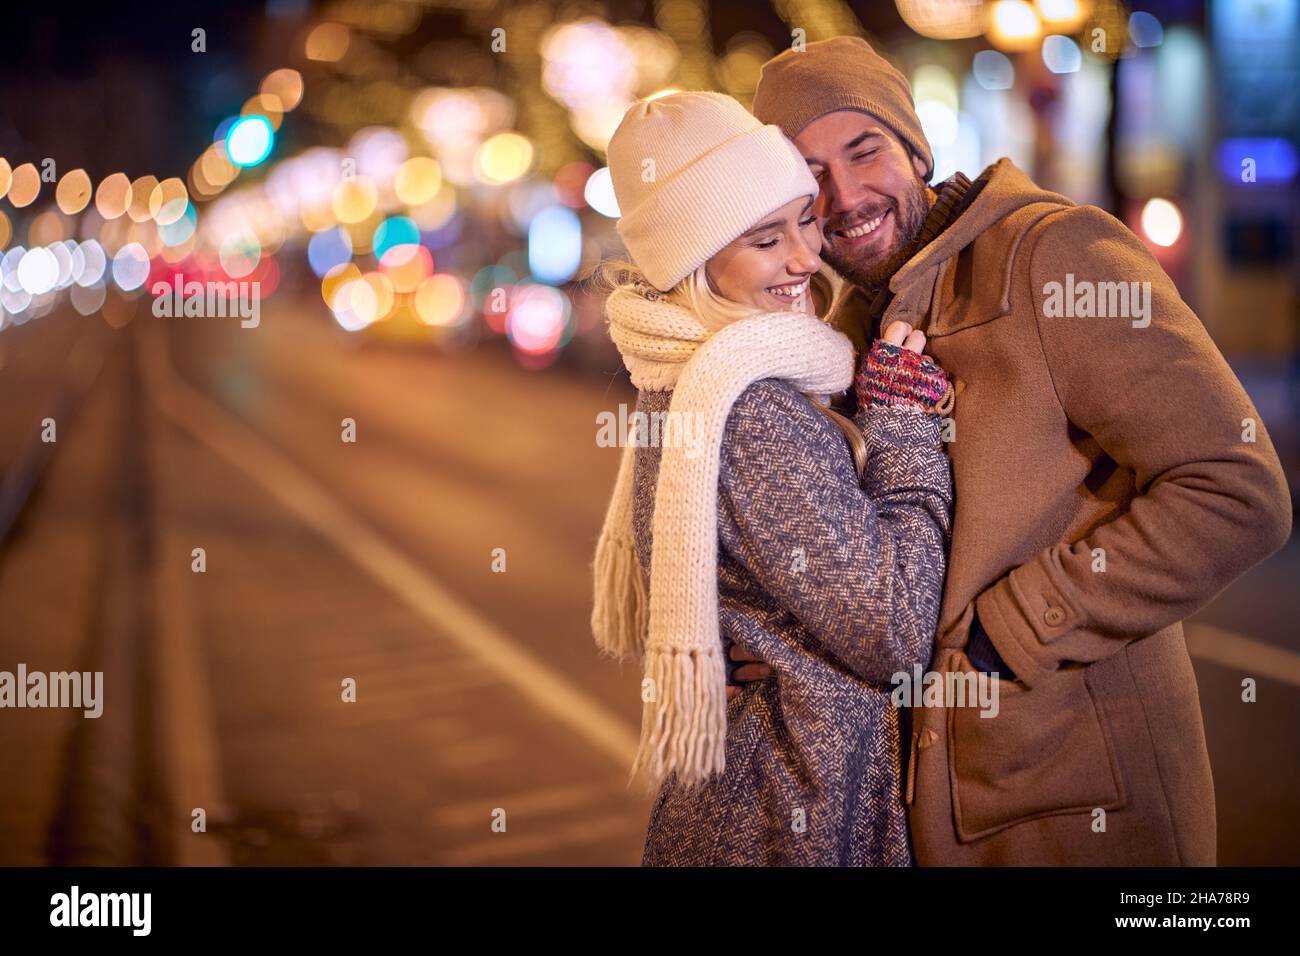 Glückliches Paar, das gemeinsam glückliche Momente teilt; Winter Joy Konzept Stockfoto